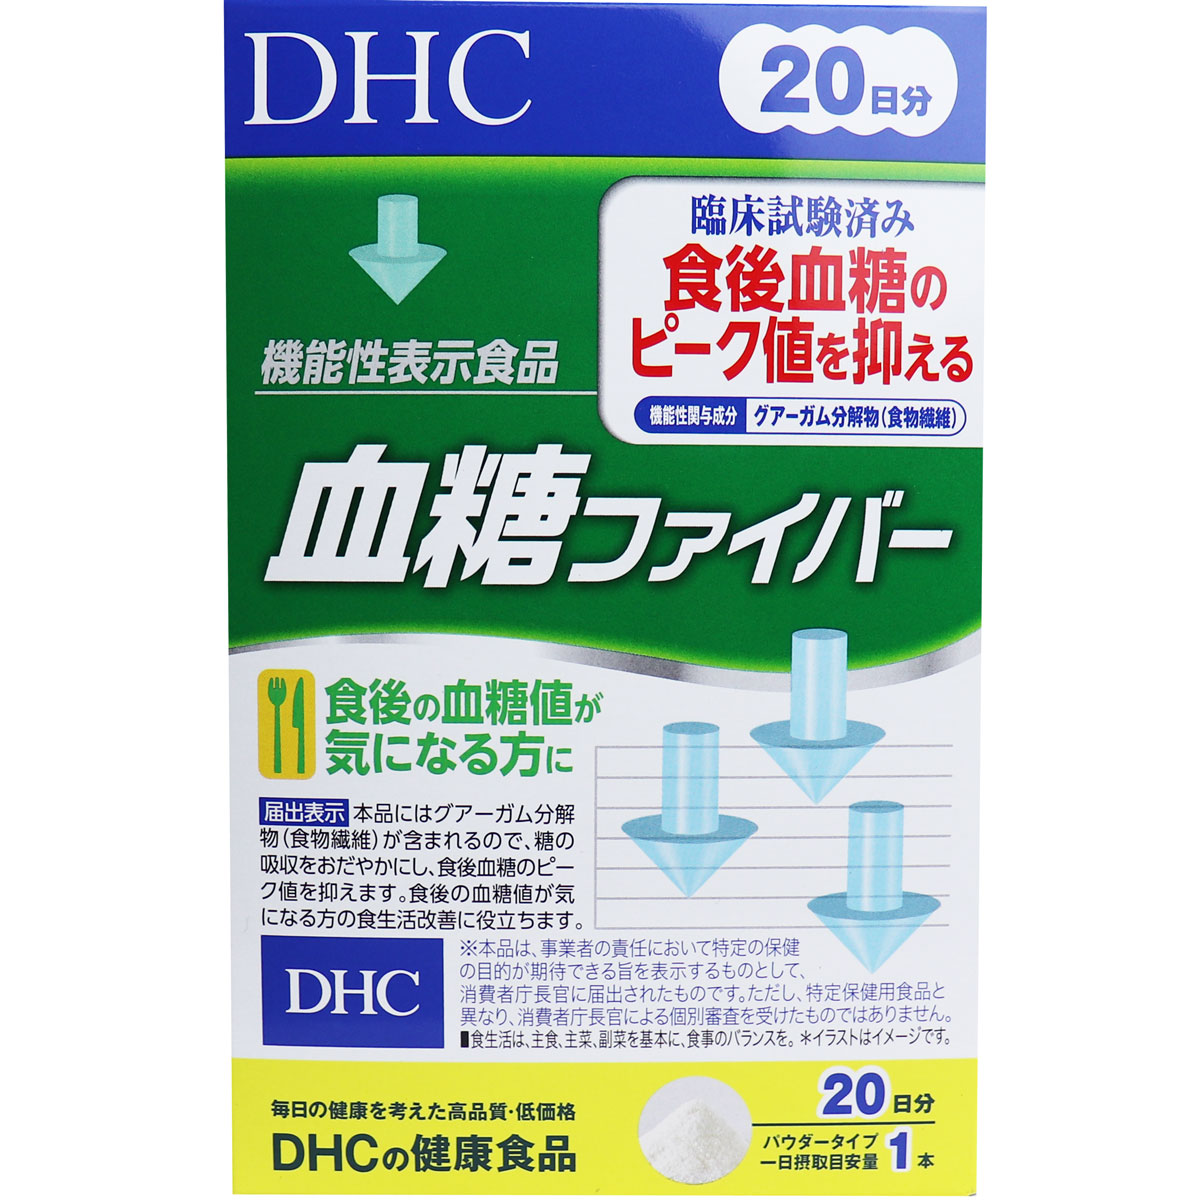 ※[廃盤]DHC 血糖ファイバー 20日分 20本入